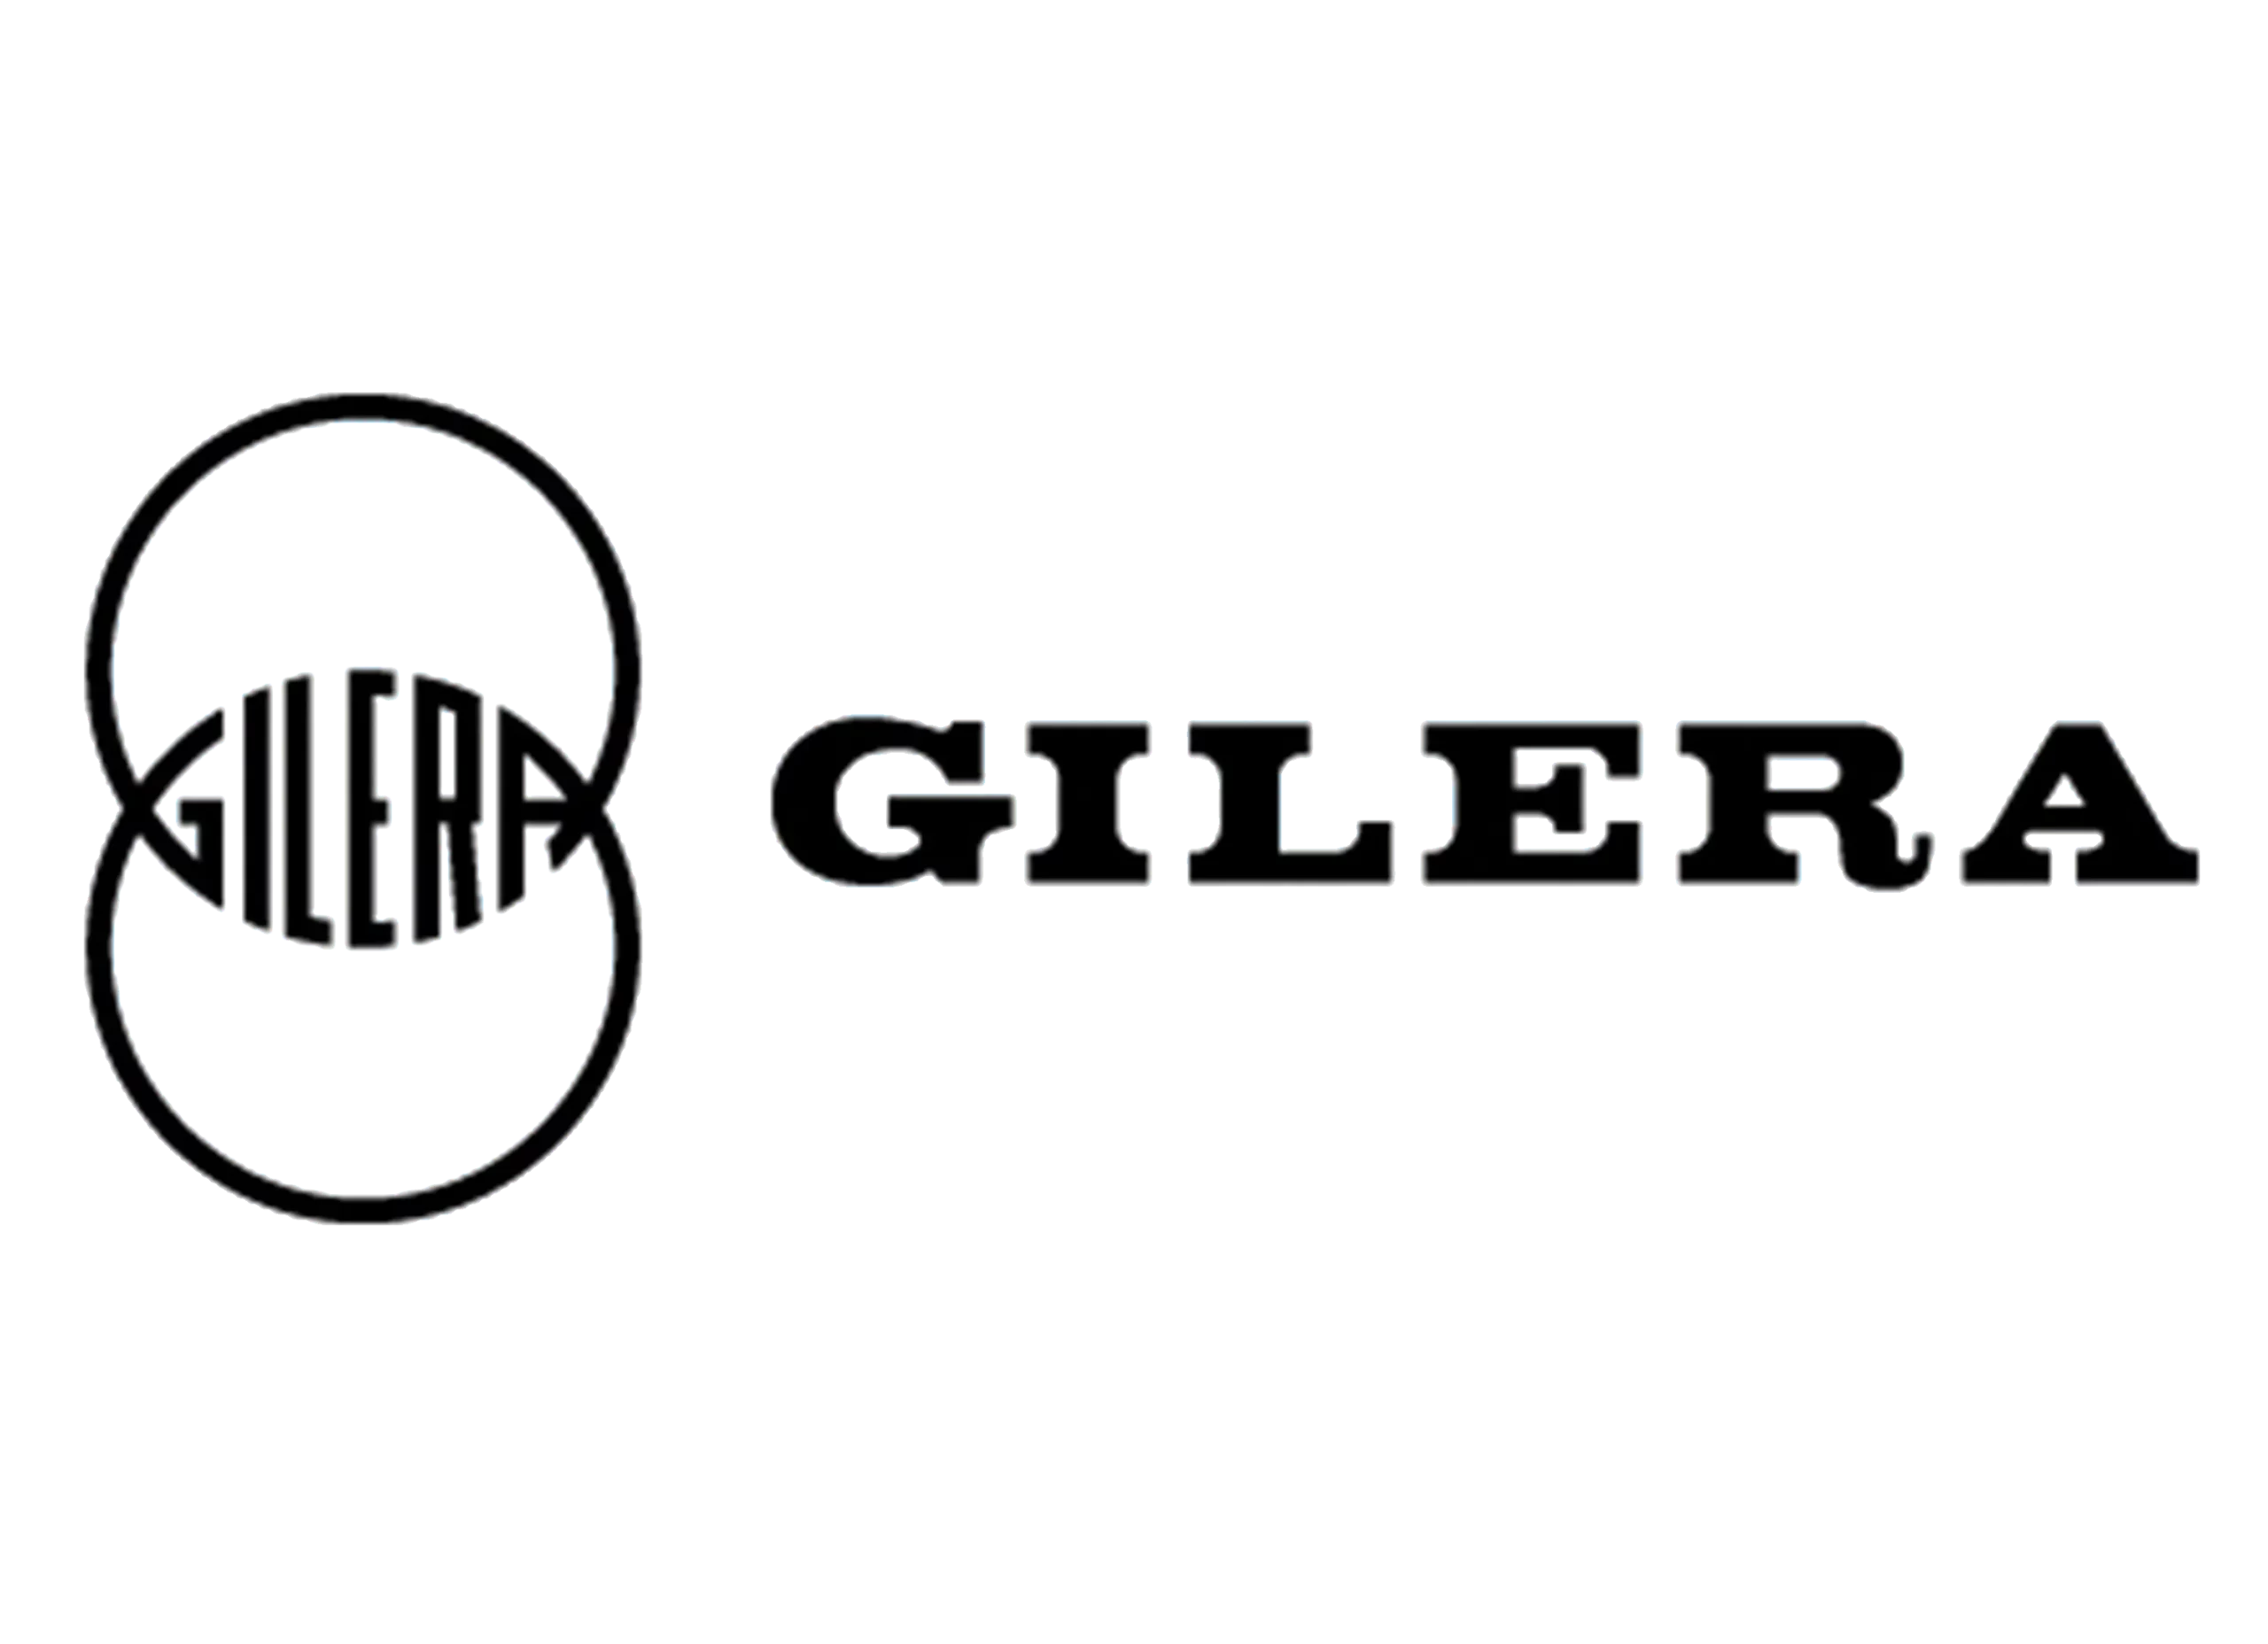 Gilera logo 1954-1956